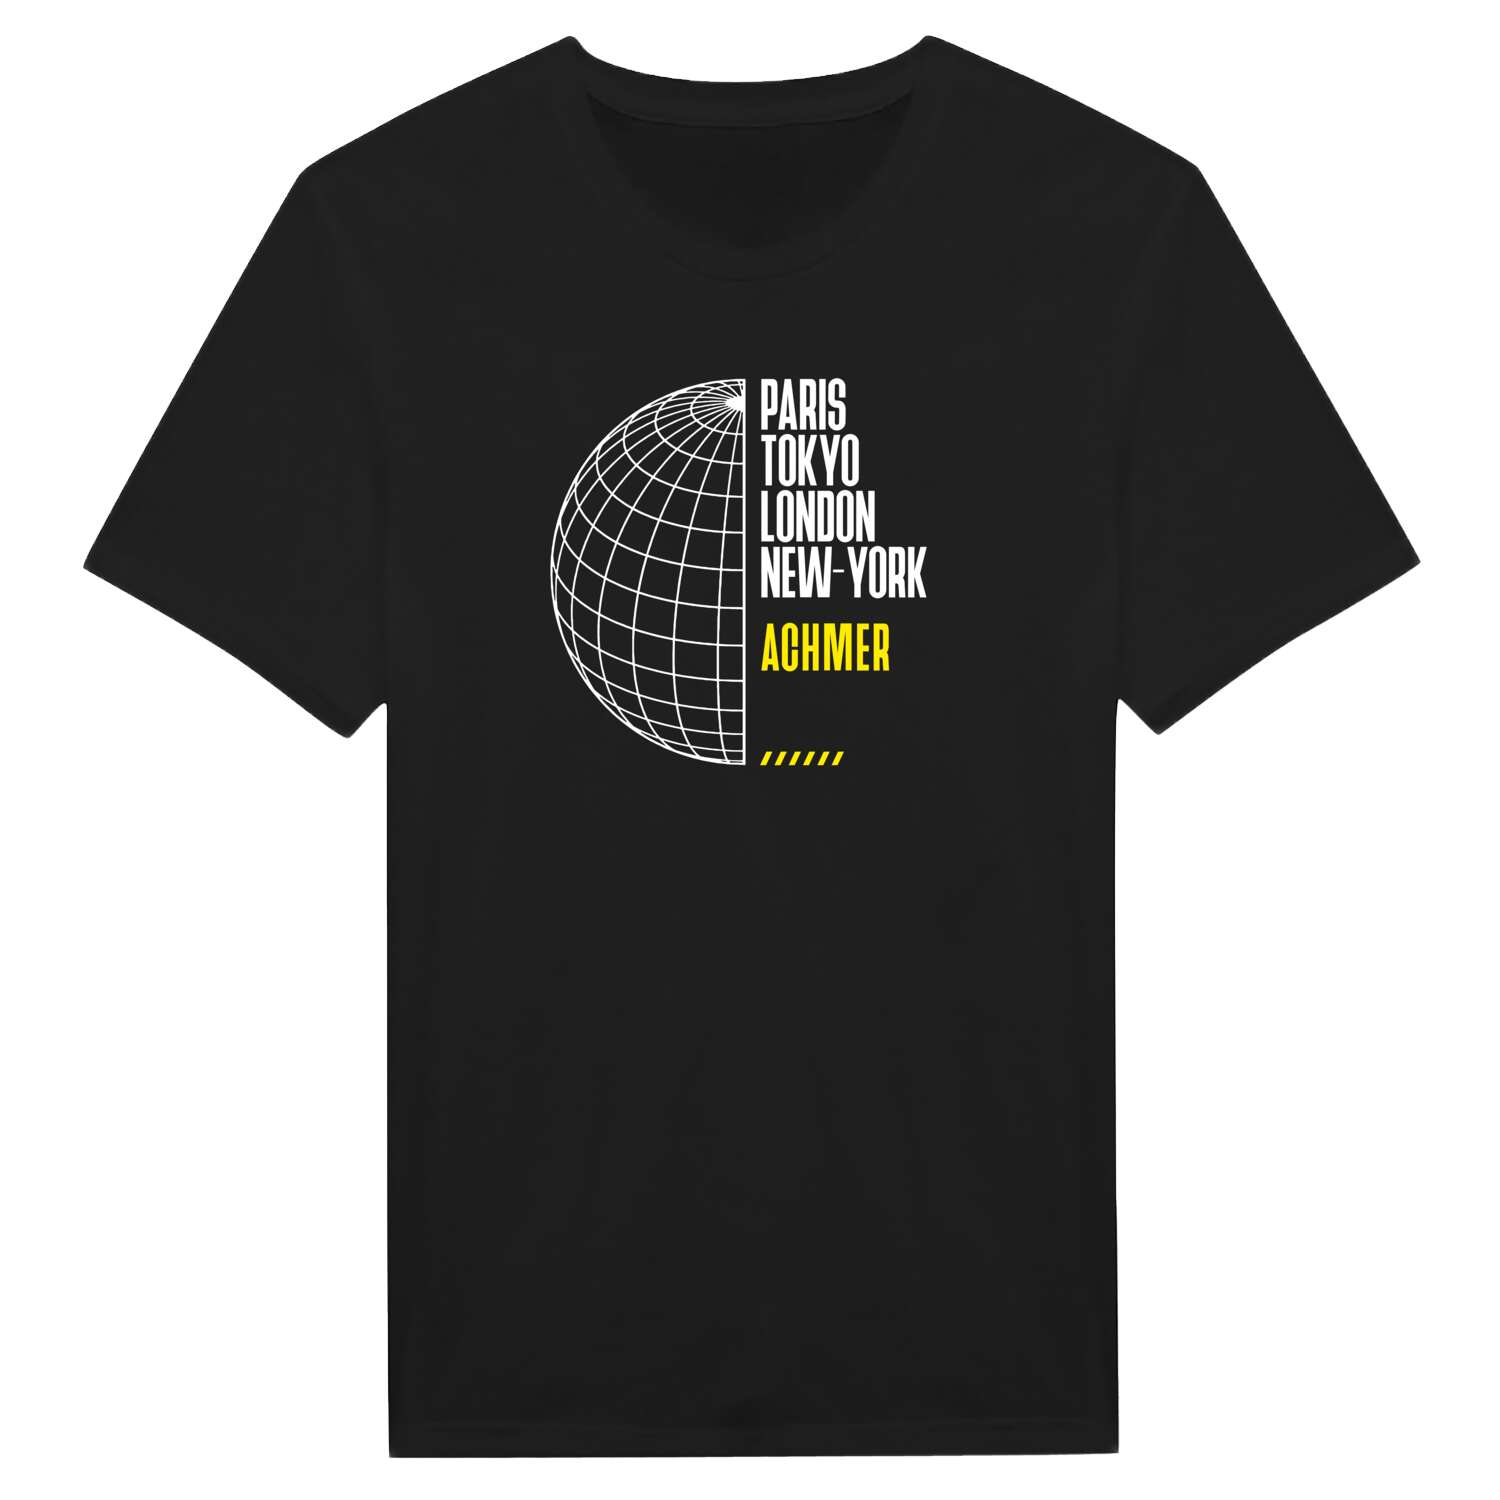 Achmer T-Shirt »Paris Tokyo London«